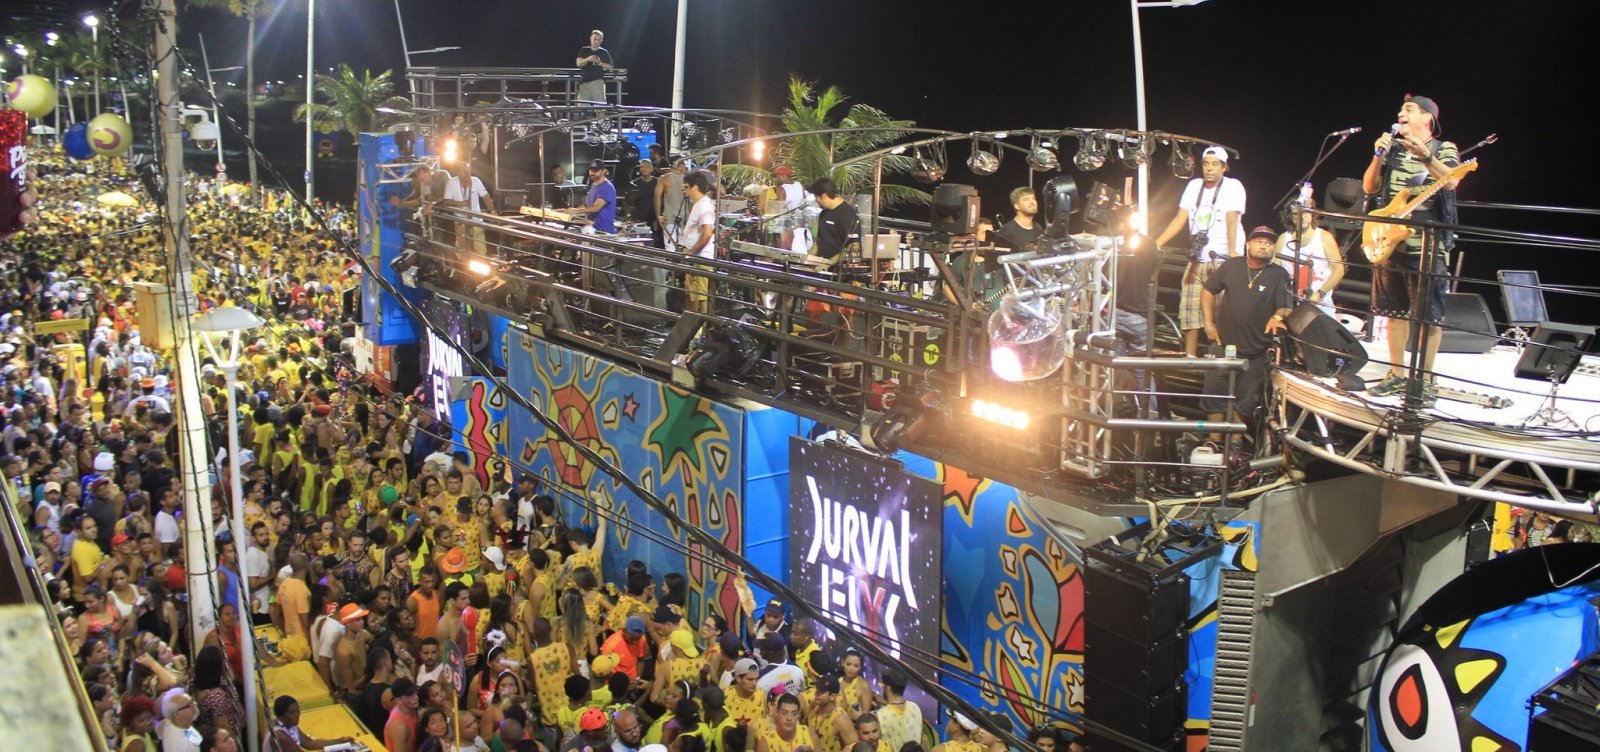 Câmara de Vereadores proíbe carnaval na quarta-feira de cinzas por motivo religioso